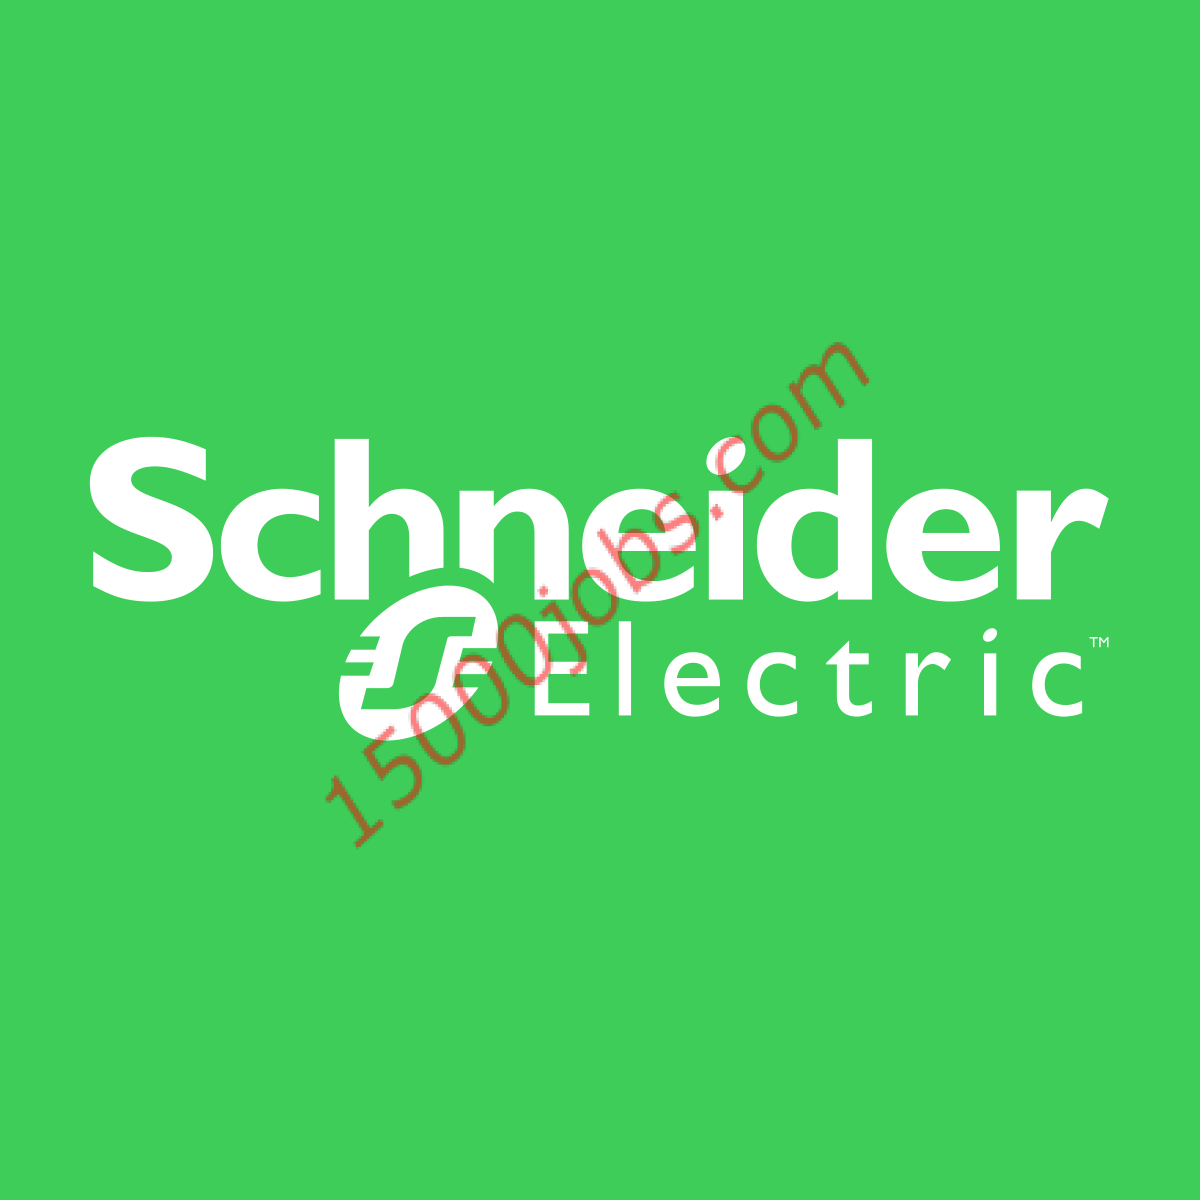 وظائف متاحة في شركة Schneider Electric اللبنانية